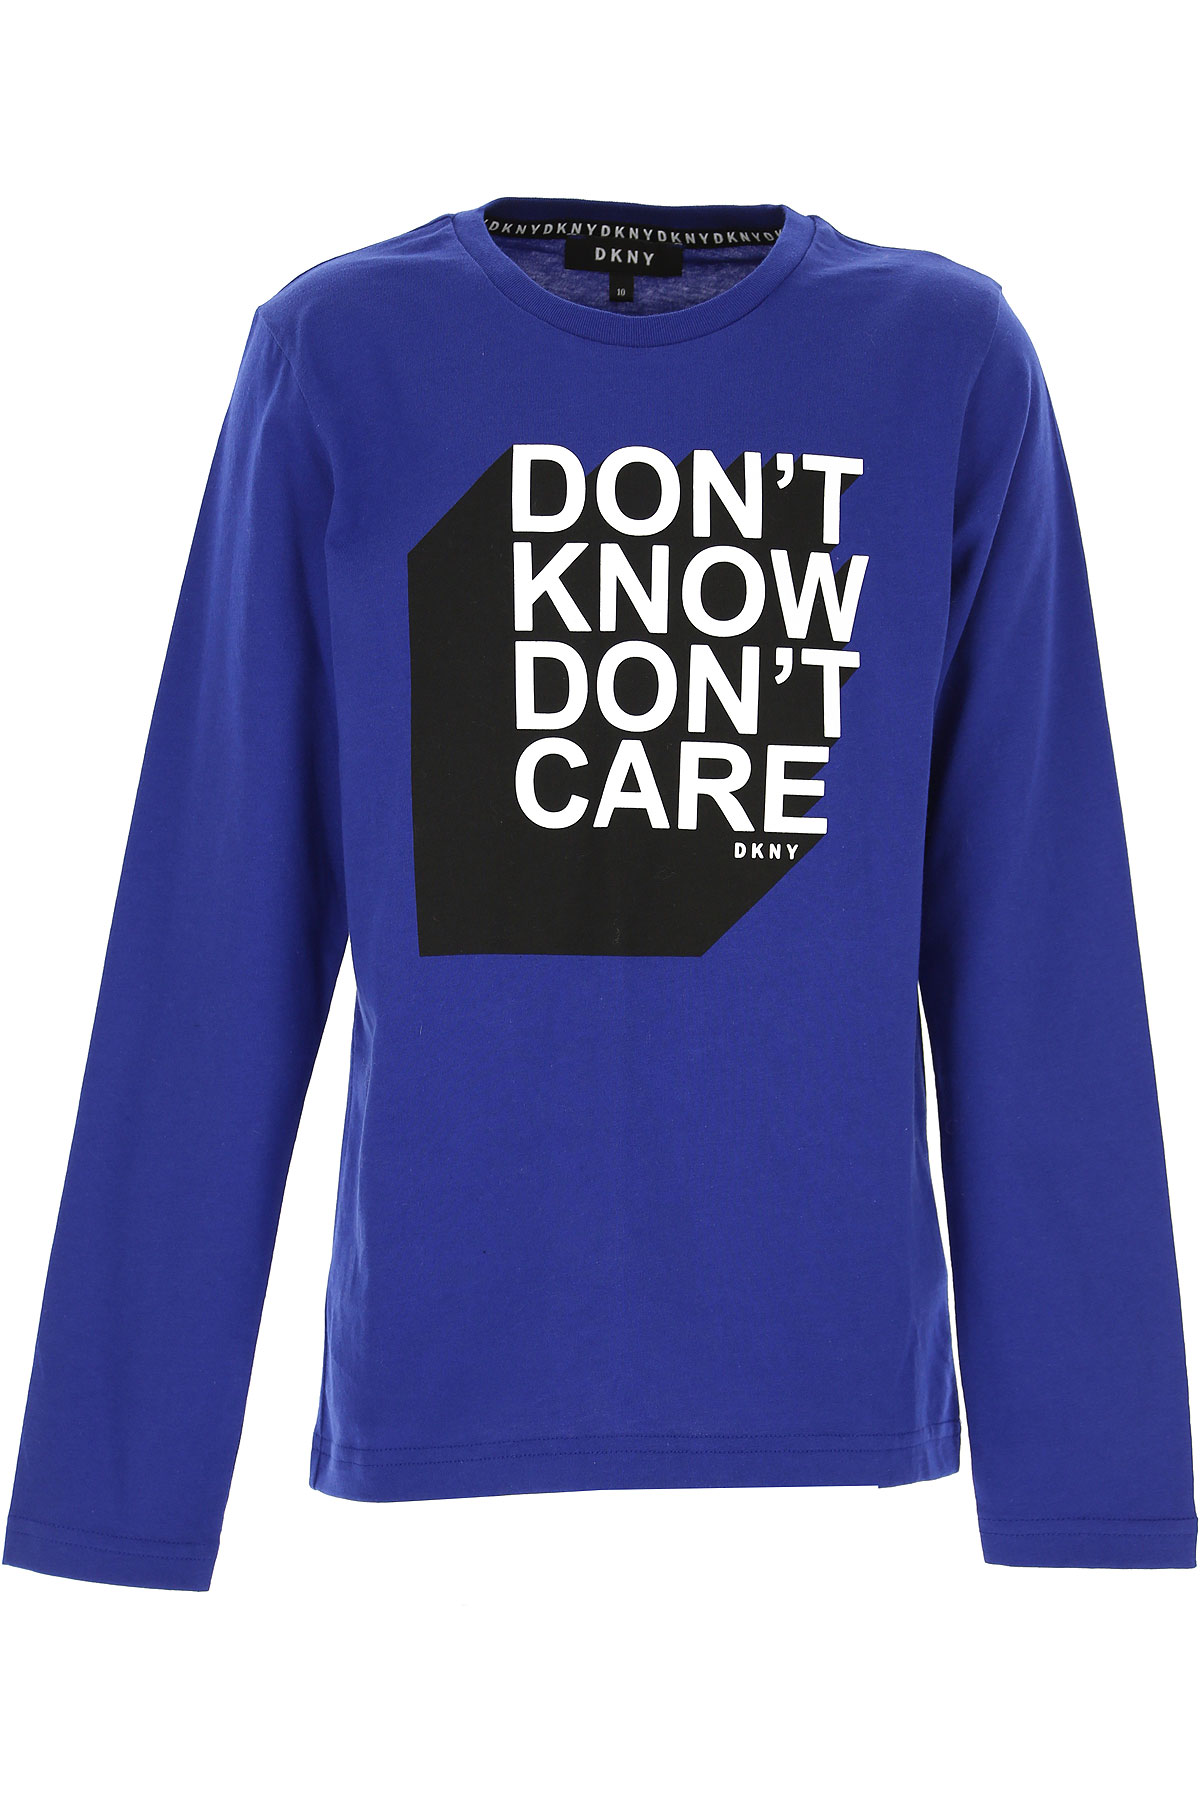 DKNY Kinder T-Shirt für Jungen Günstig im Sale, Blau, Baumwolle, 2017, 10Y 12Y 14Y 8Y